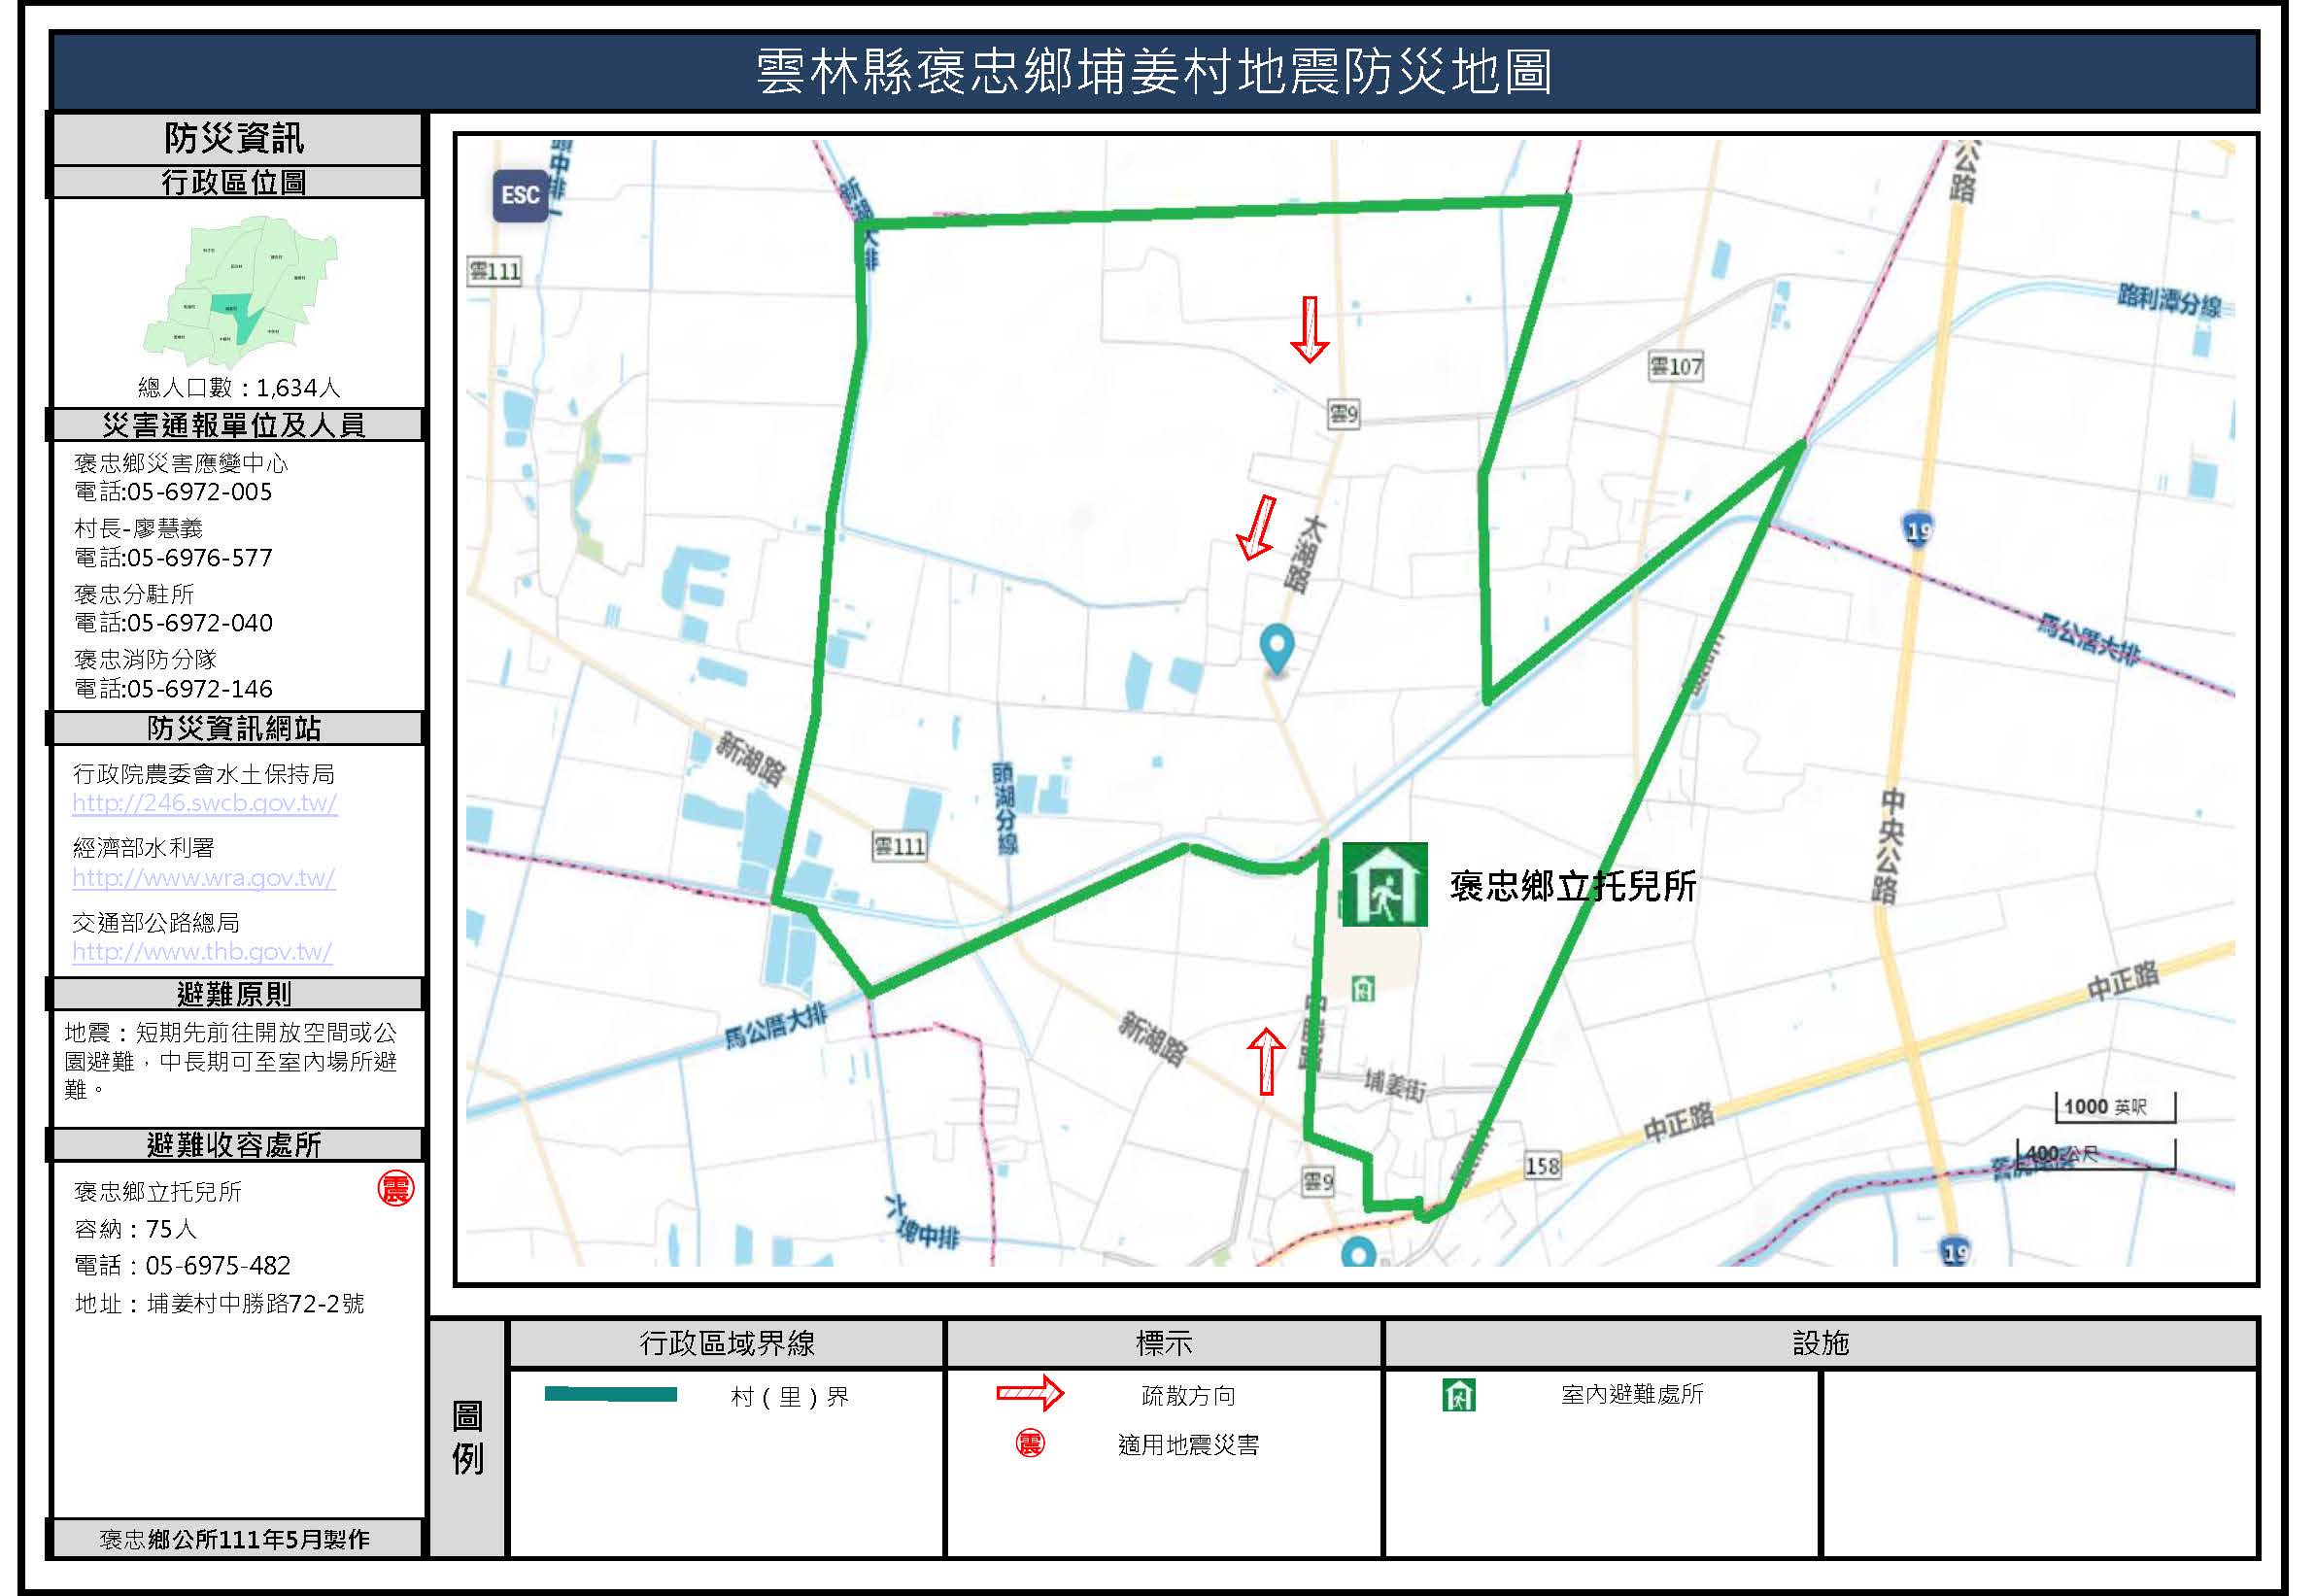 埔姜村地震簡易防災地圖